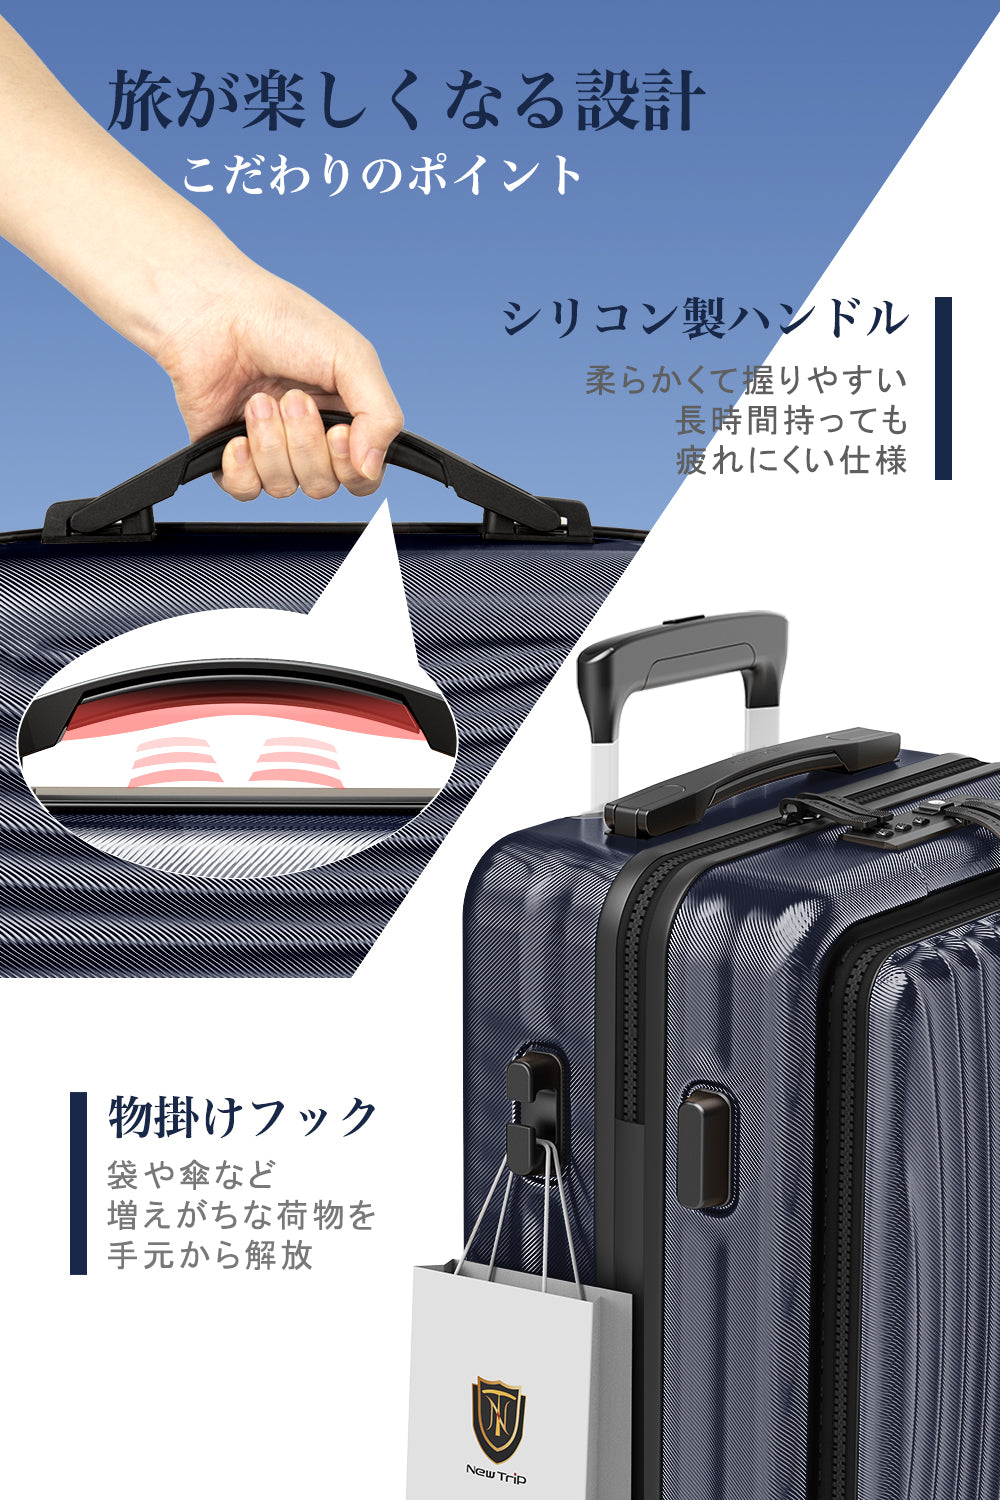 [New Trip] スーツケース フロントオープン 機内持ち込み ストッパー付き 出張 1-4泊 40リットル Sサイズ ブルー